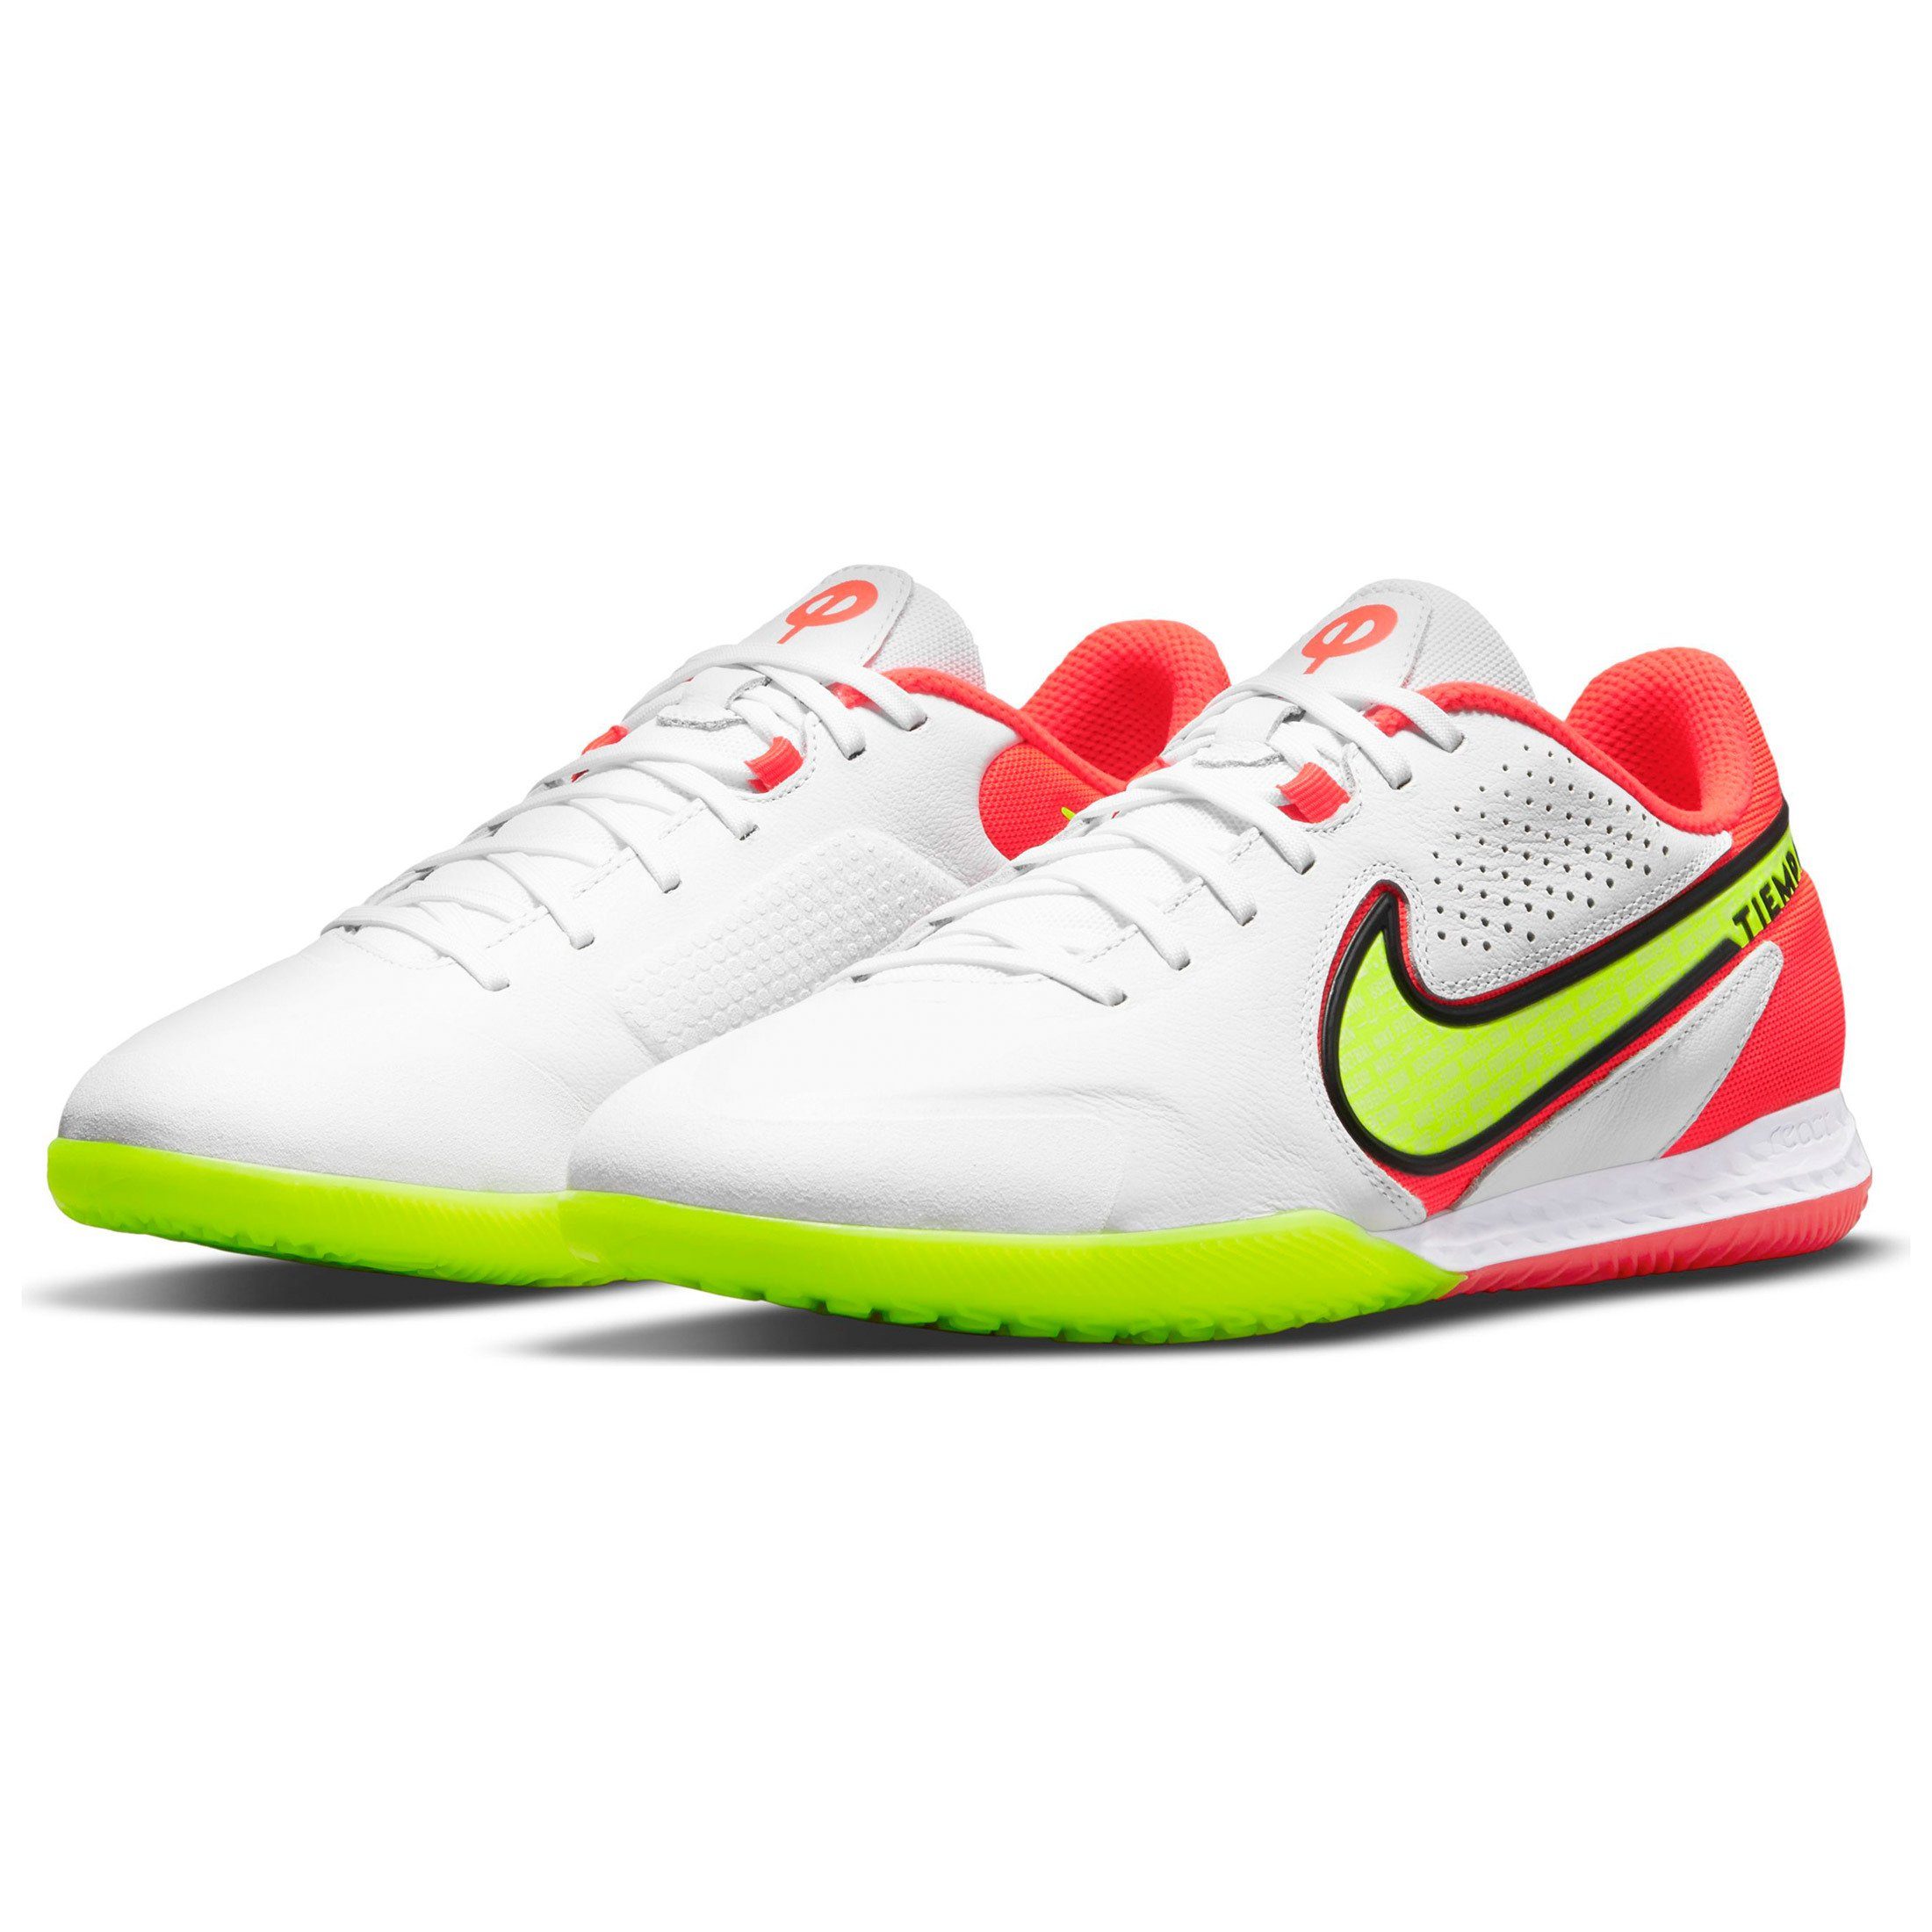 Nike Hallenfußballschuhe » Noppenschuhe online kaufen | OTTO